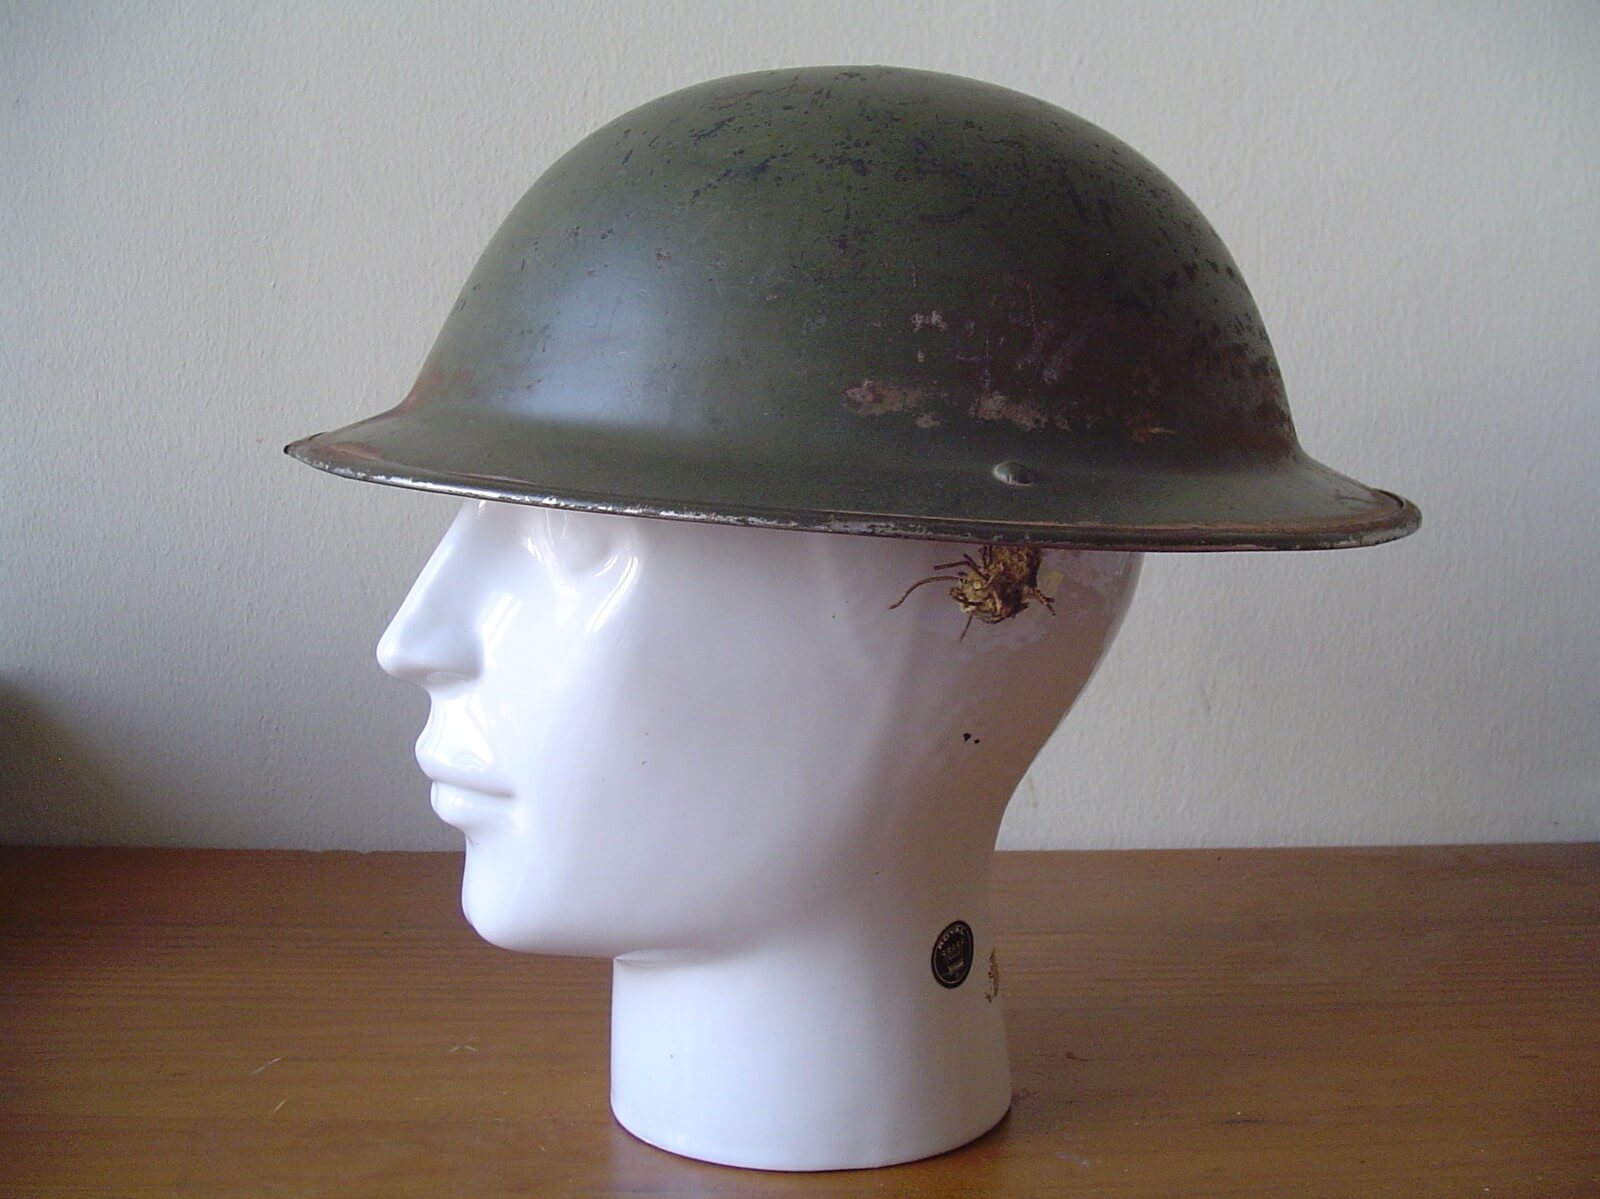 Engelse helm uit de tweede wereldoorlog bodemvondst Pijnacker-Nootdorp